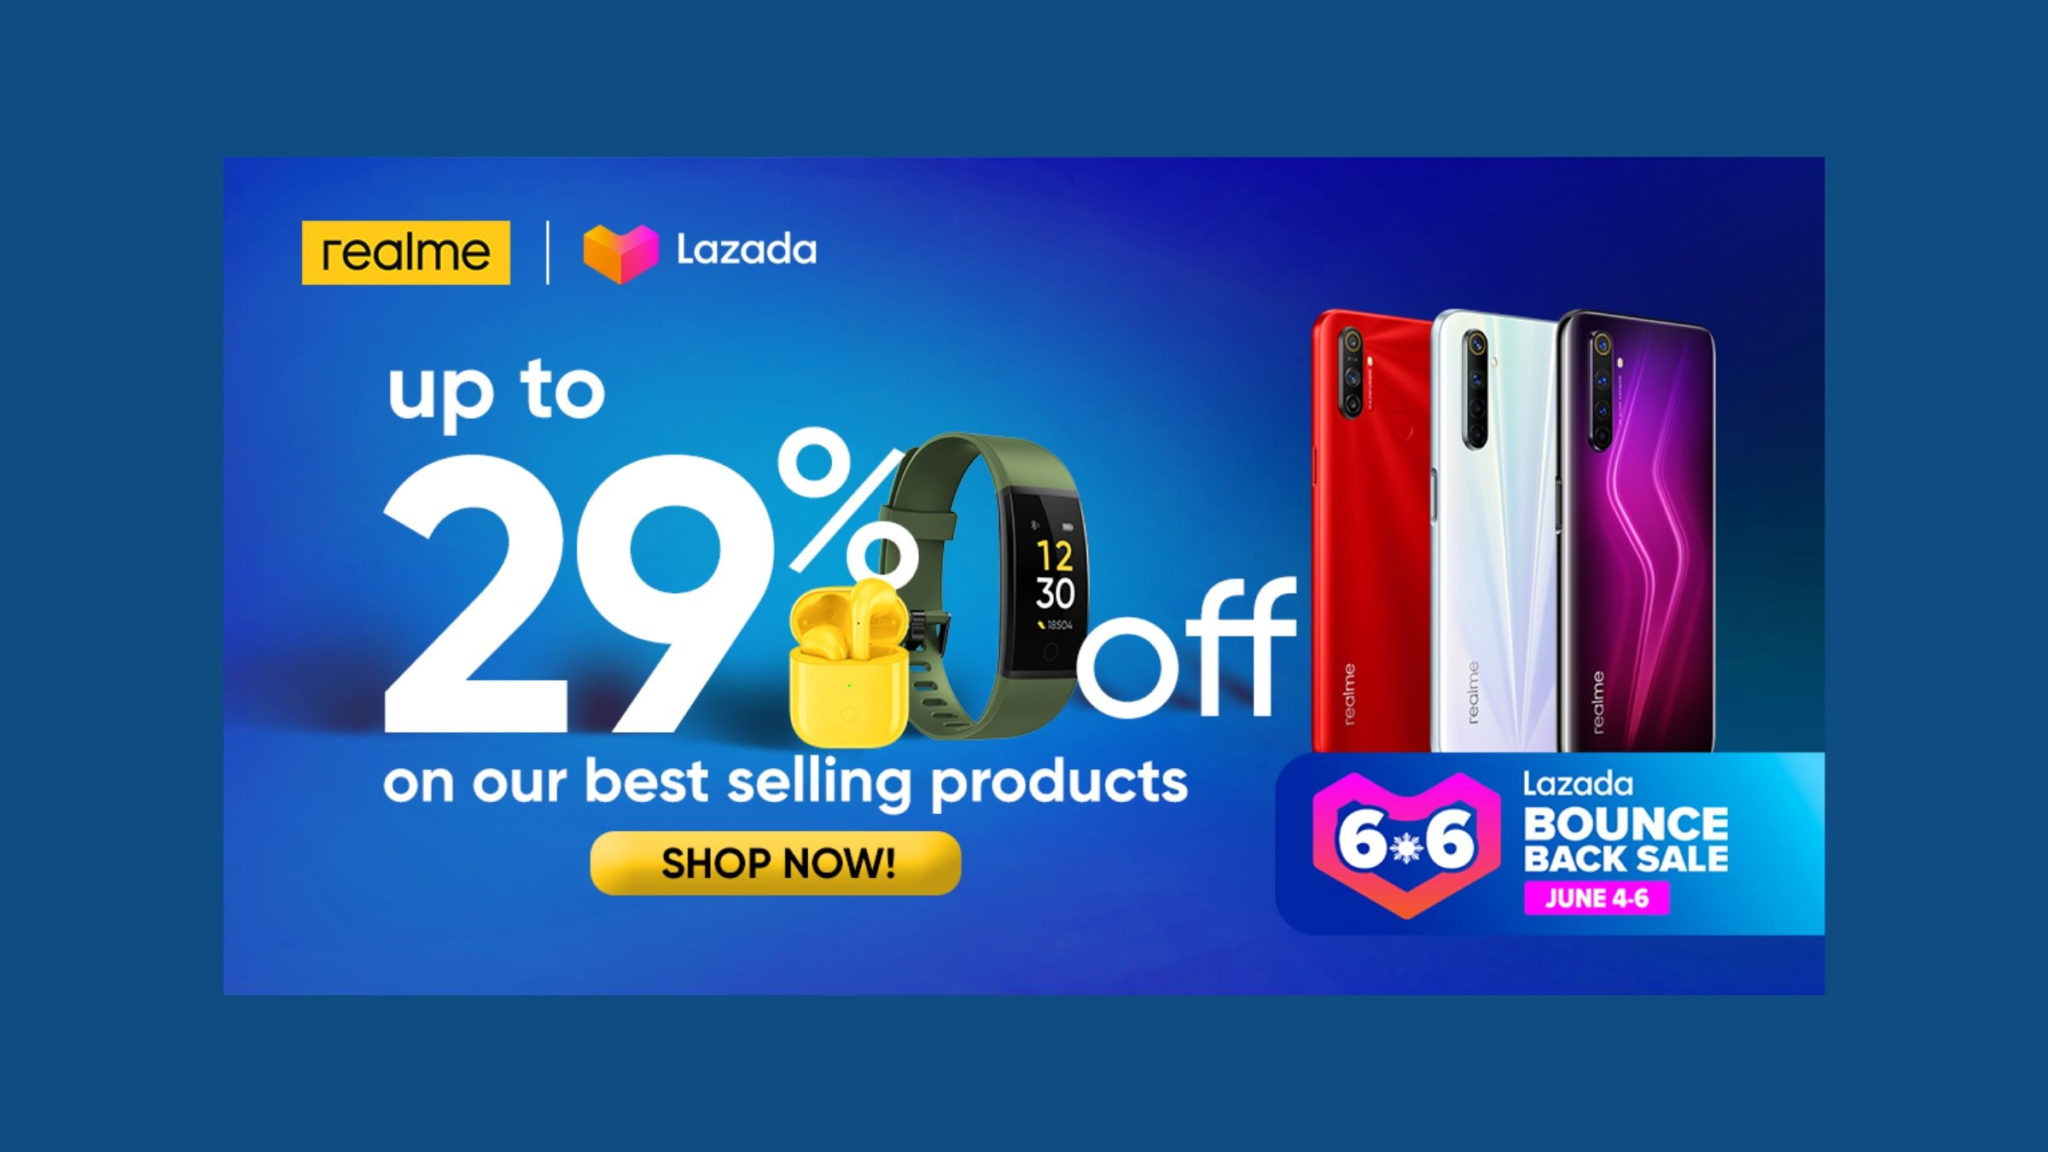 Realme Philippines Lazada 6.6 Sale Deals Header